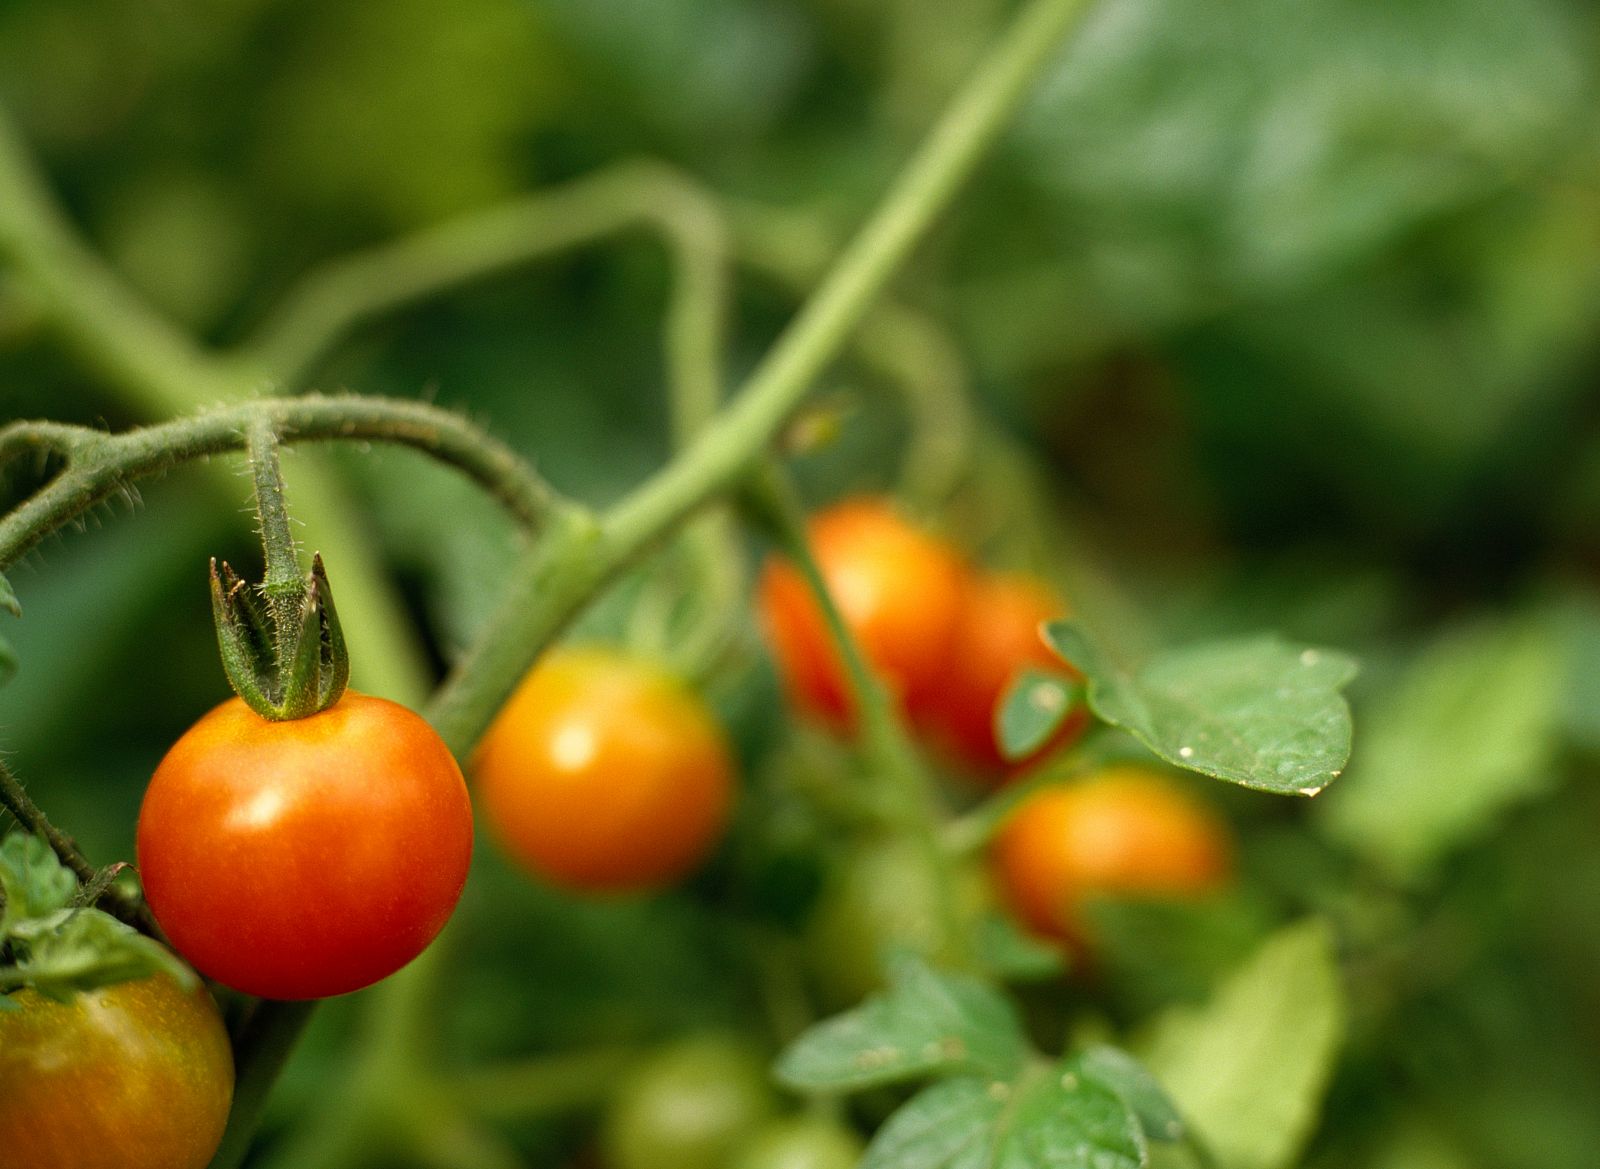 Científicos españoles descubren unnuevo antioxidante en la planta del tomate